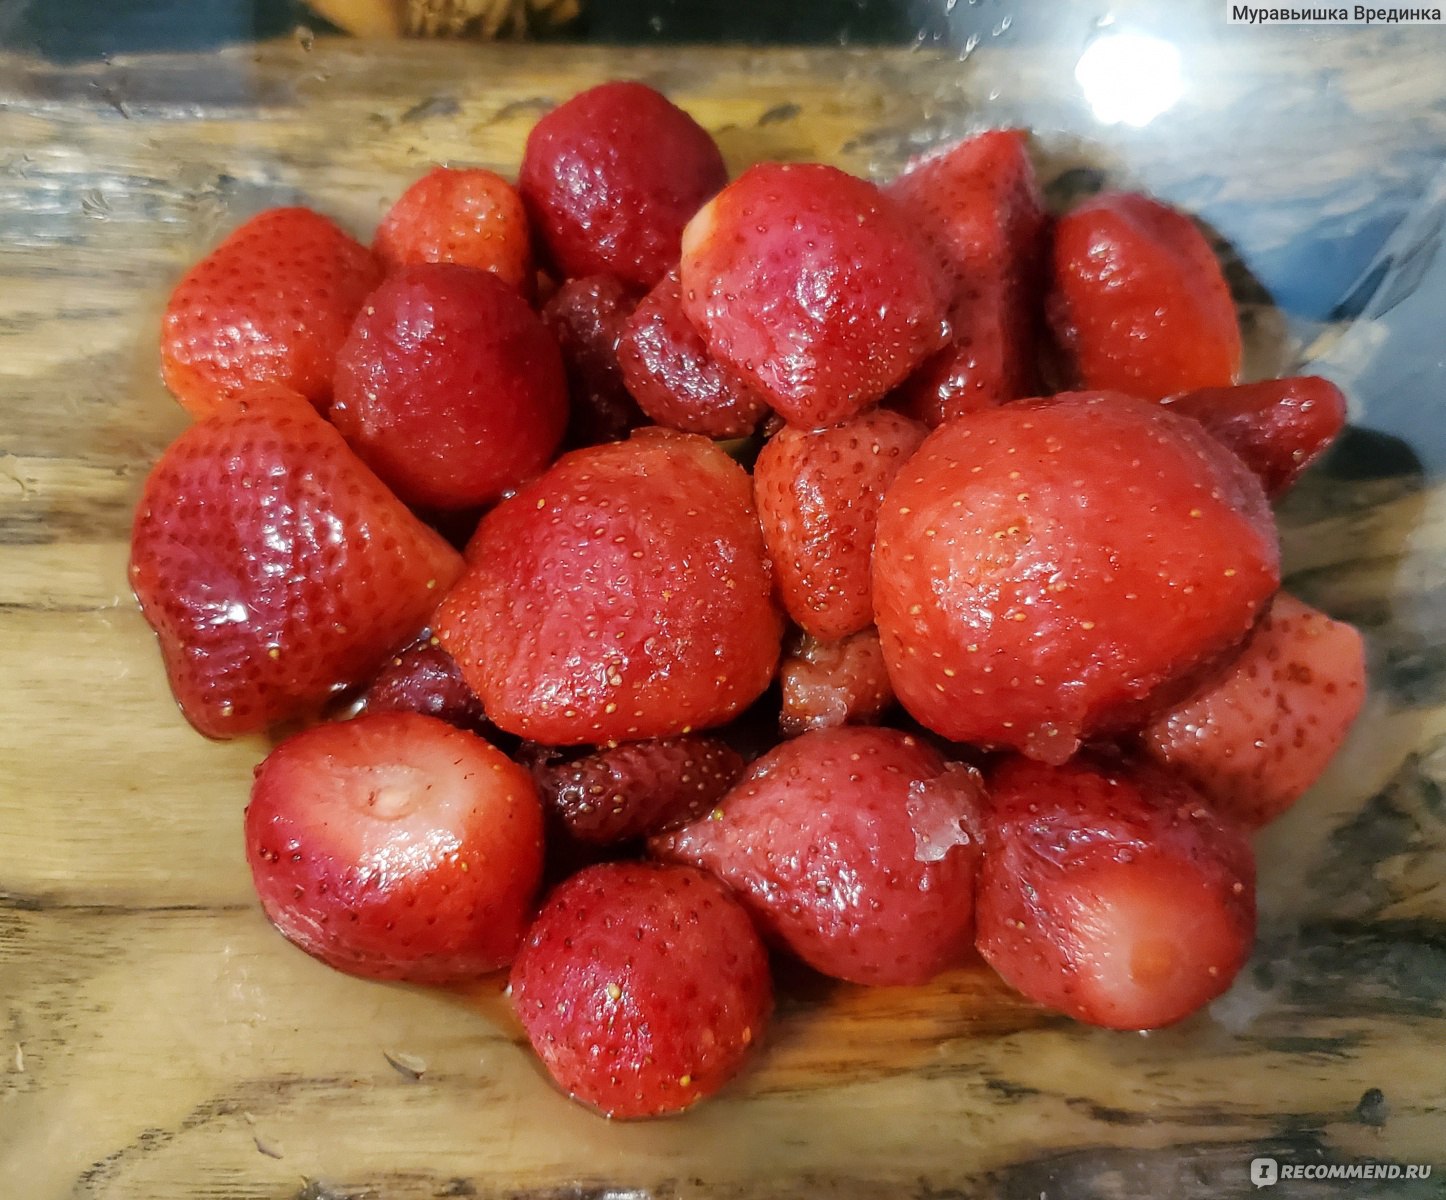 Ягоды замороженные "Красная цена" Клубника фото